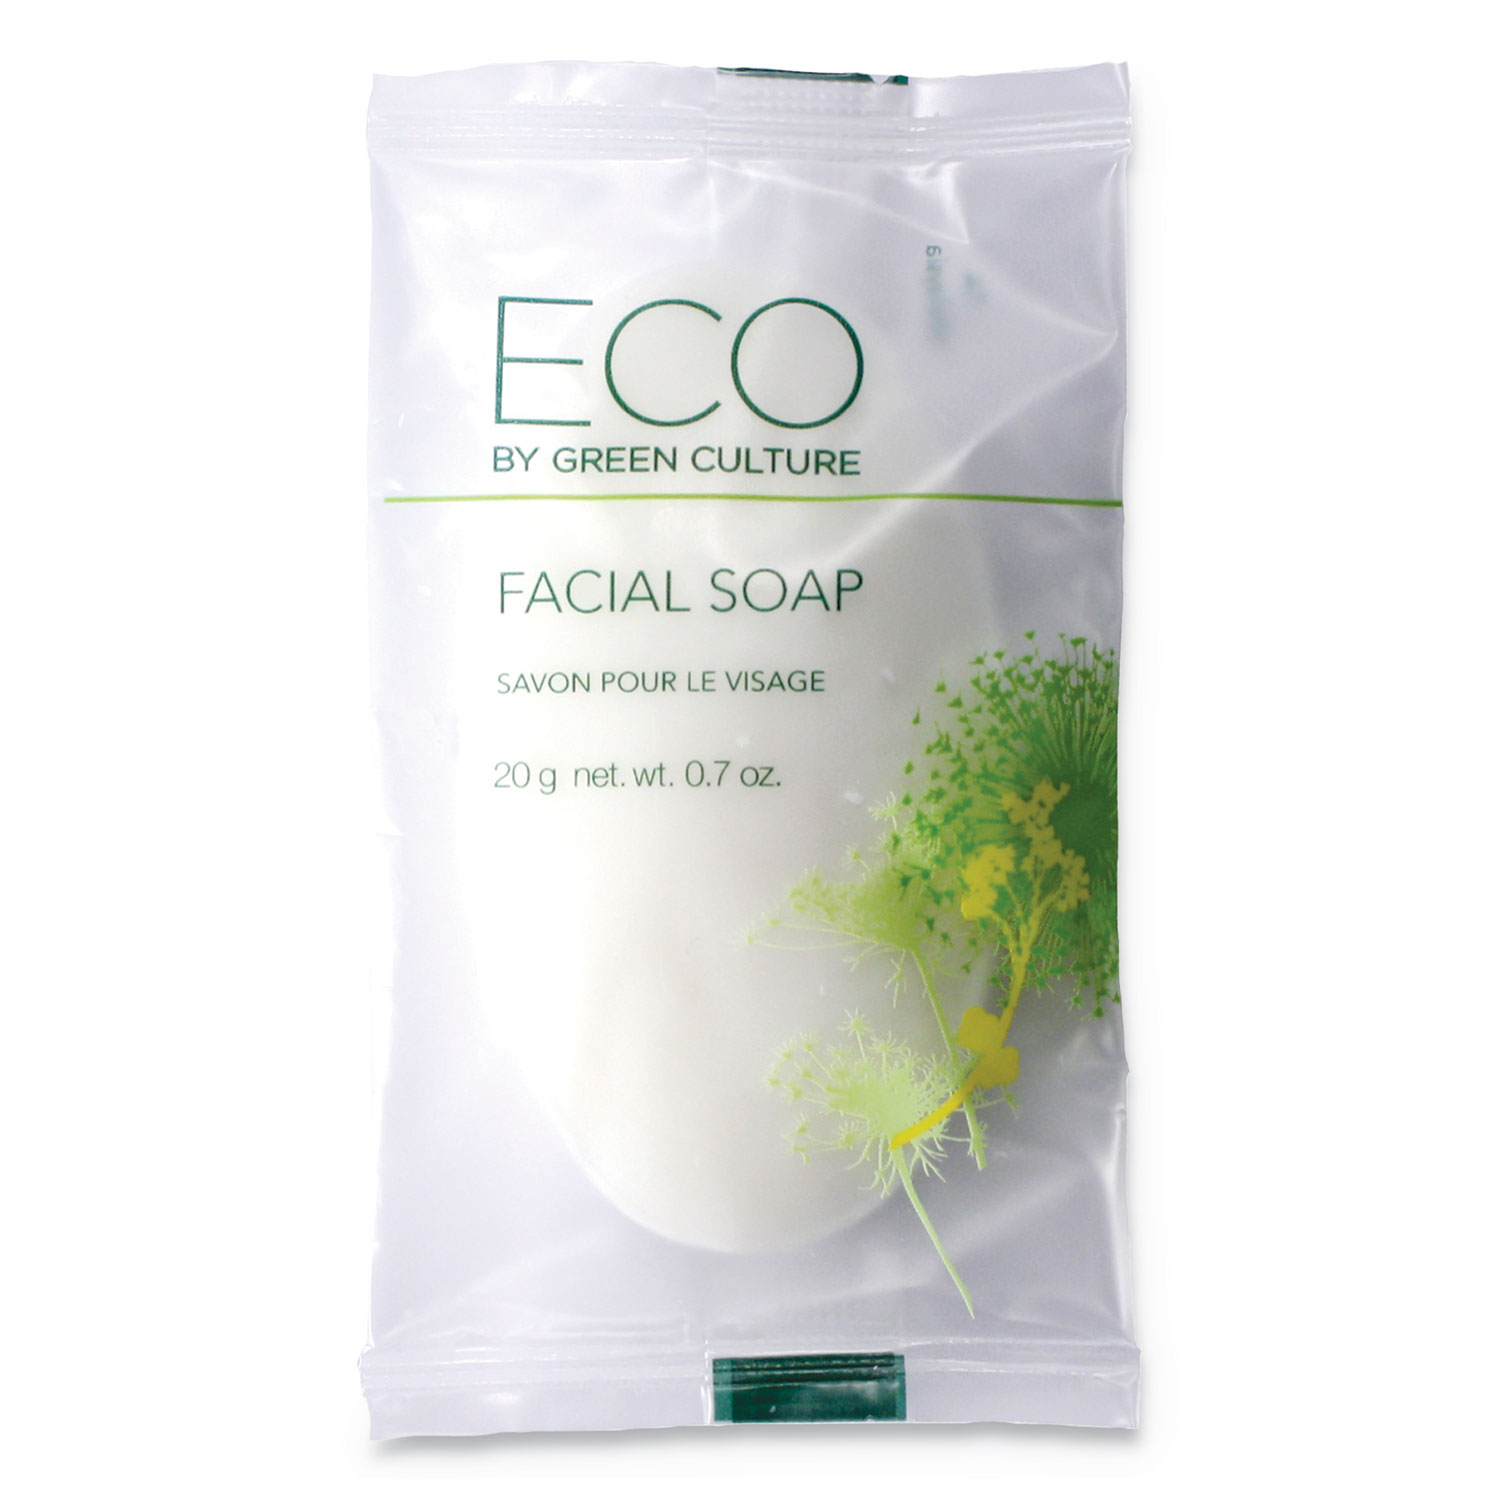 Facial Soap Bar, Clean Scent, 0.71 oz Pack, 500/Carton